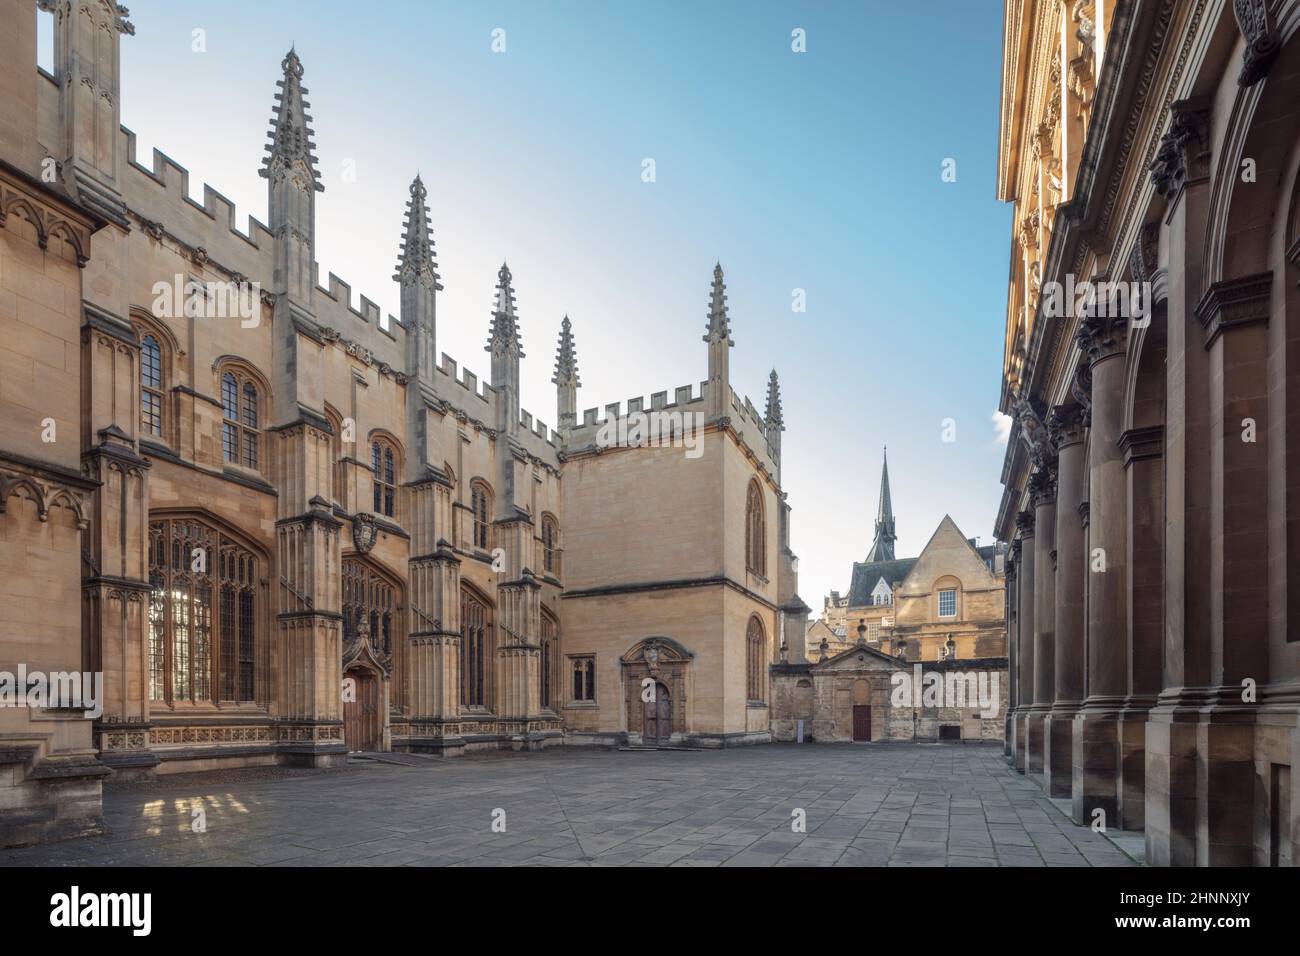 Reino Unido, Universidad de Oxford. Fachada norte de la Escuela de Divinidad gótica medieval con el Teatro Sheldoniano (primer plano, a la derecha), sin gente, día soleado. Foto de stock